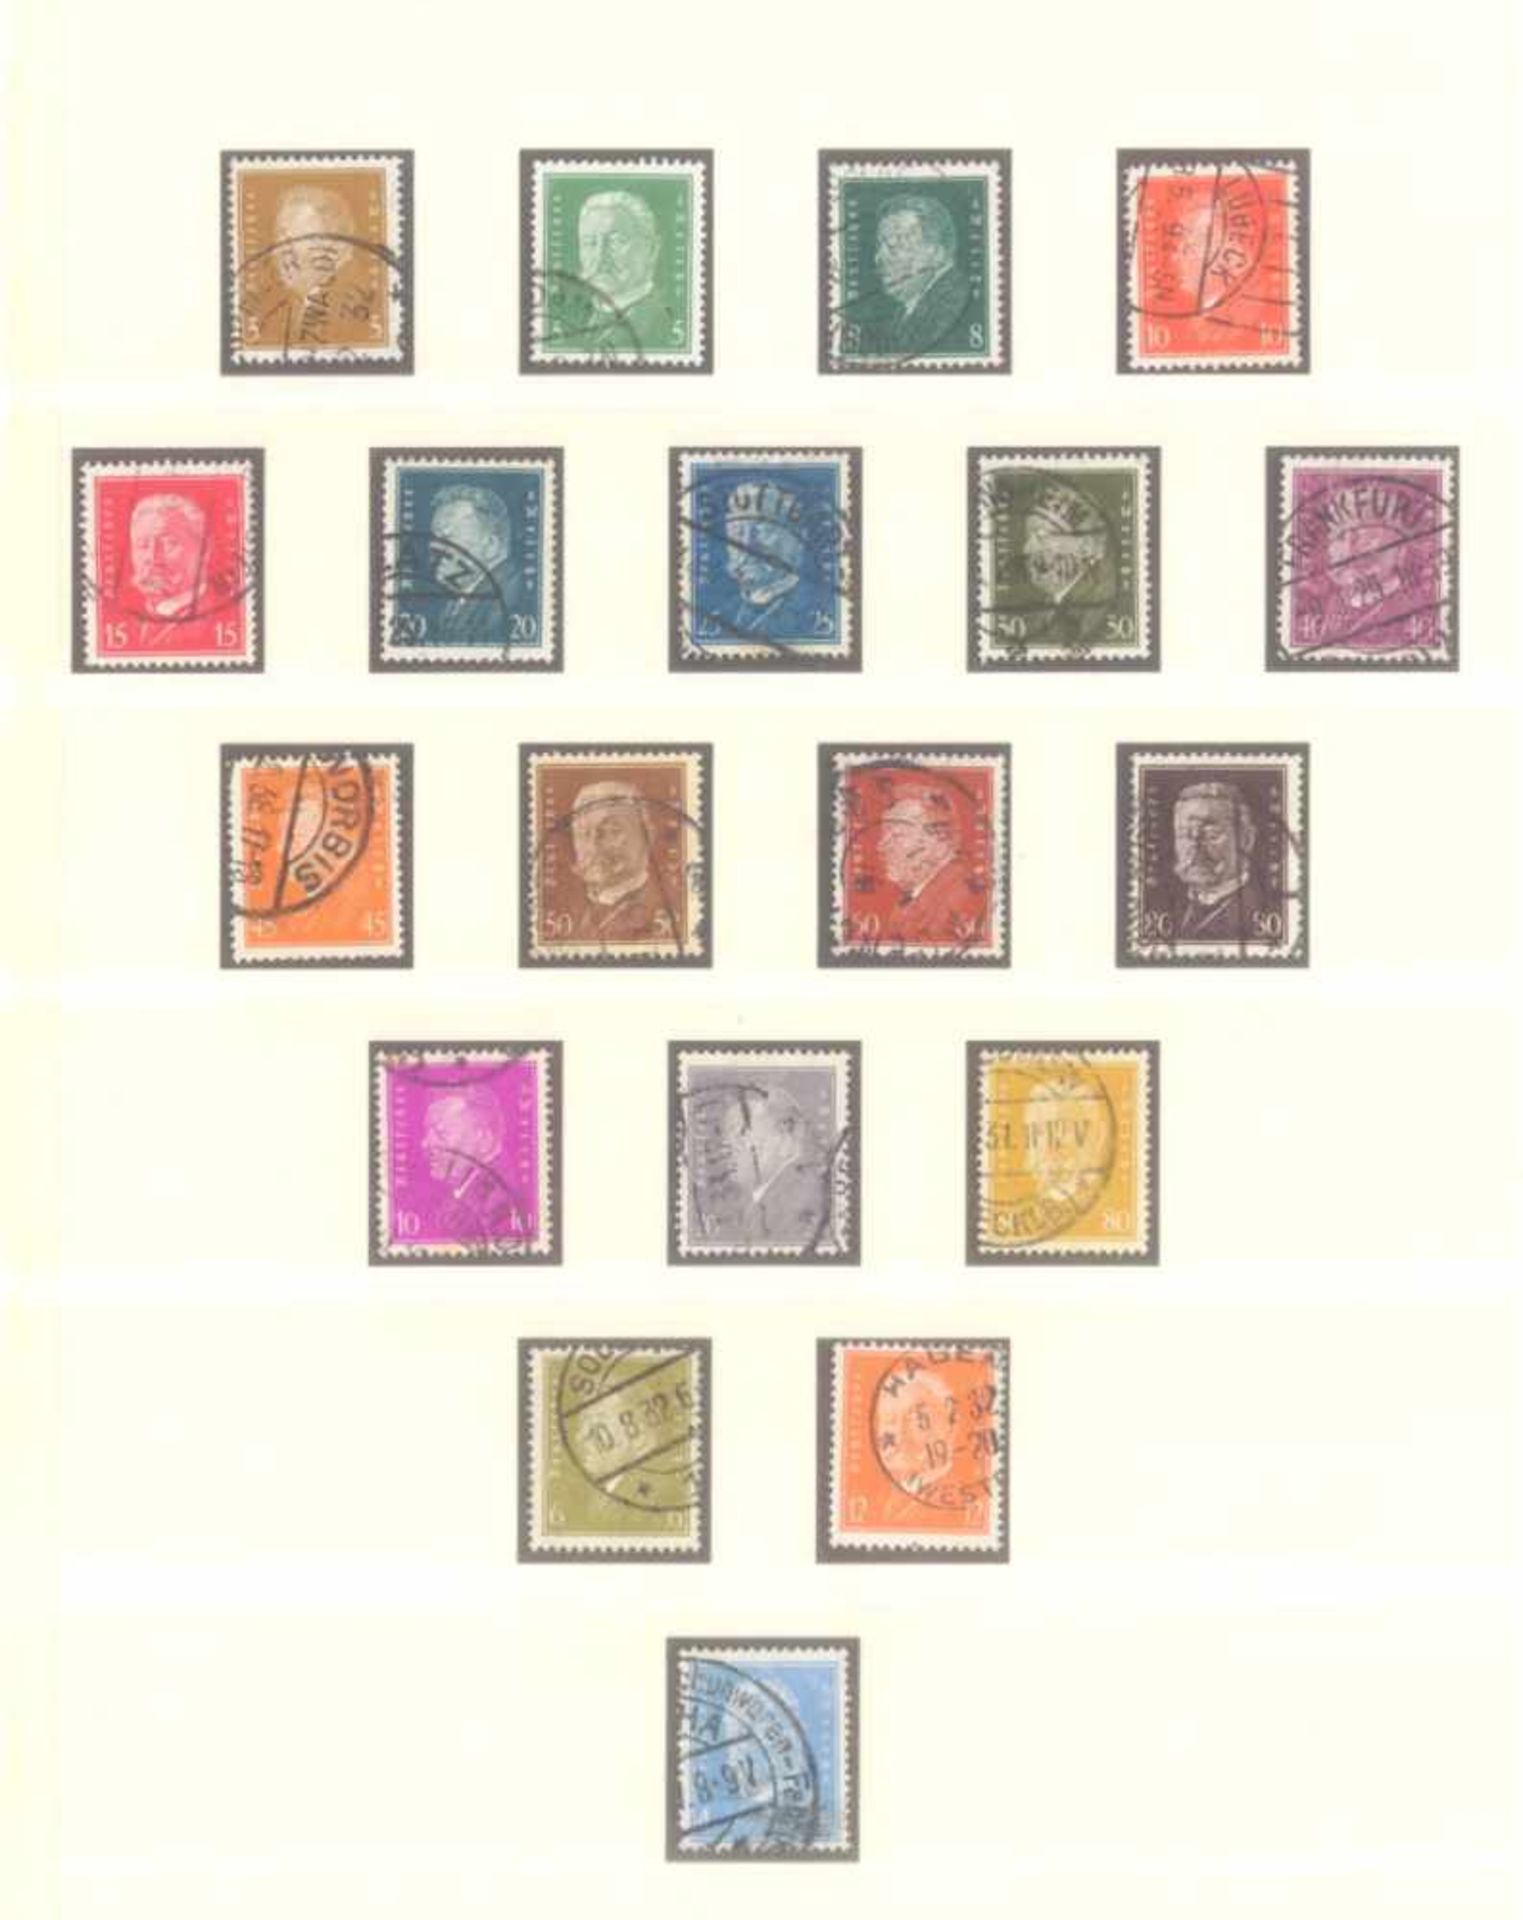 DEUTSCHES REICH - WEIMARER REPUBLIK 1923-1933gestempelte Sammlung in LINDNER T-Falzlosvordruck - Bild 8 aus 13